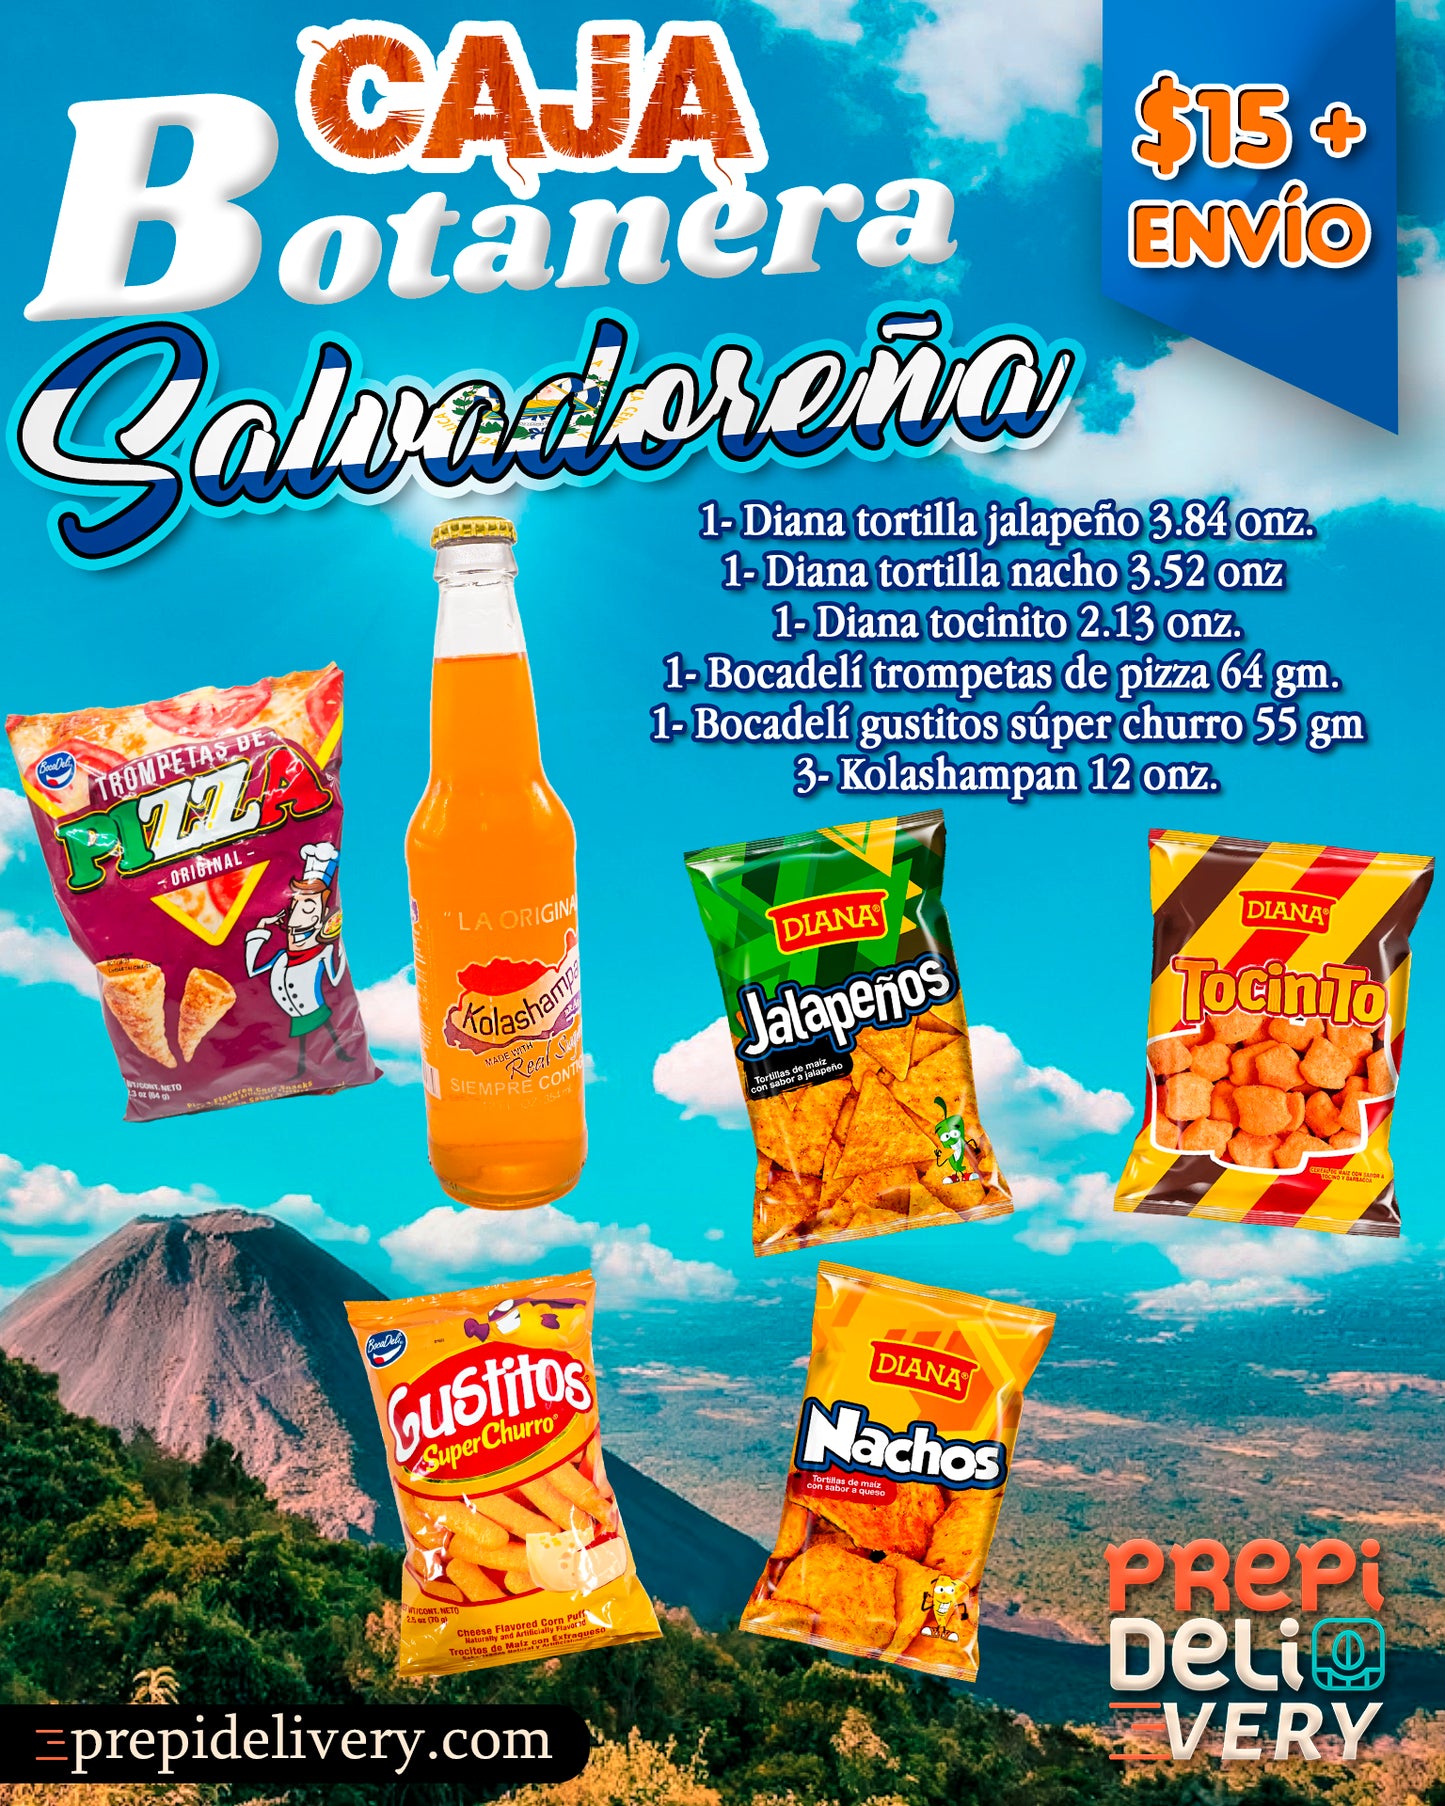 Caja Botanera Salvadoreña